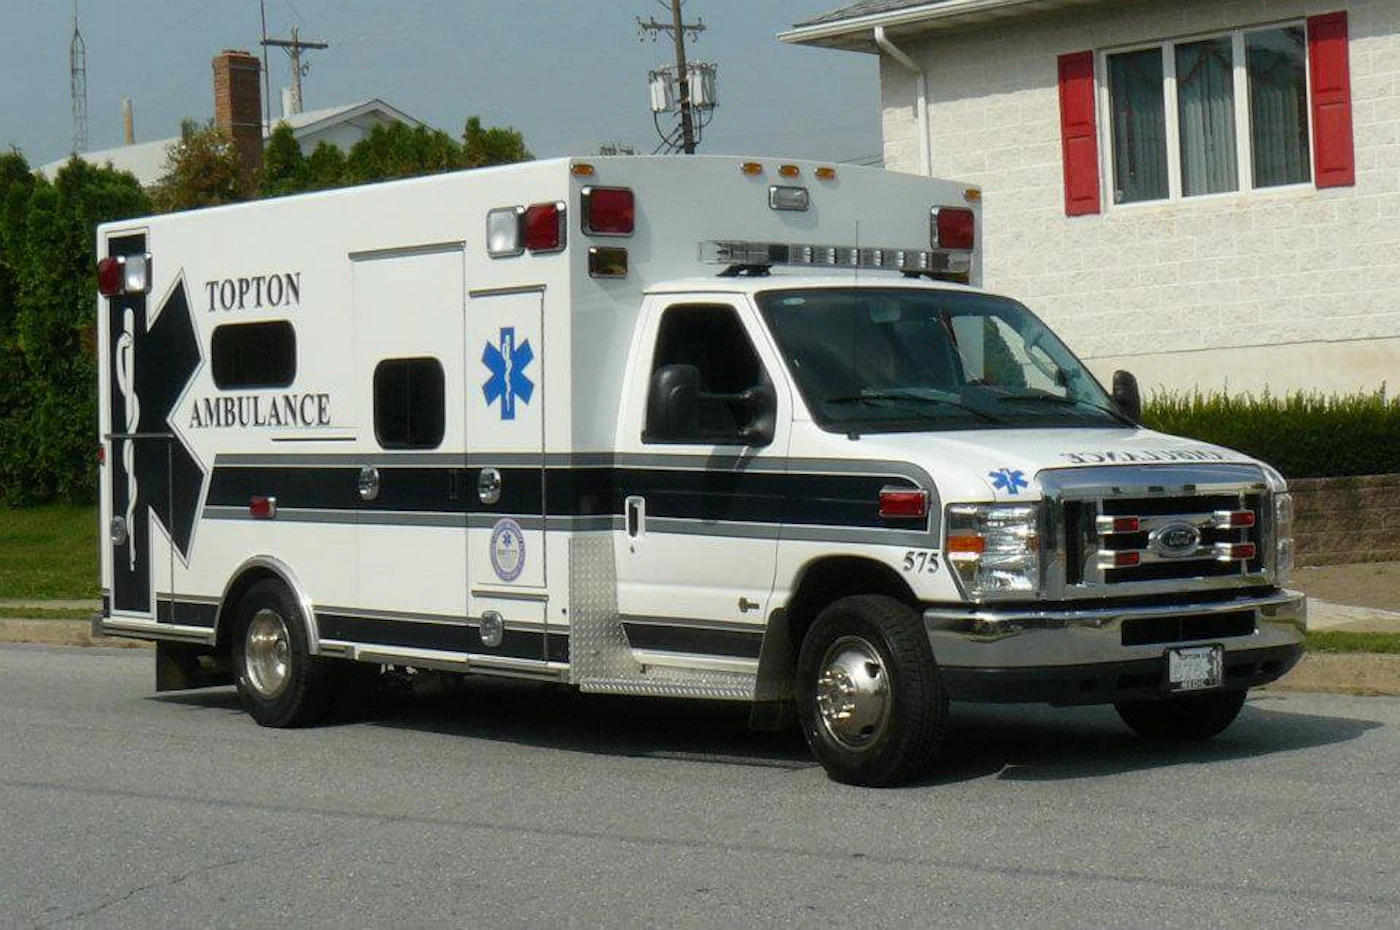 Topton Ambulance